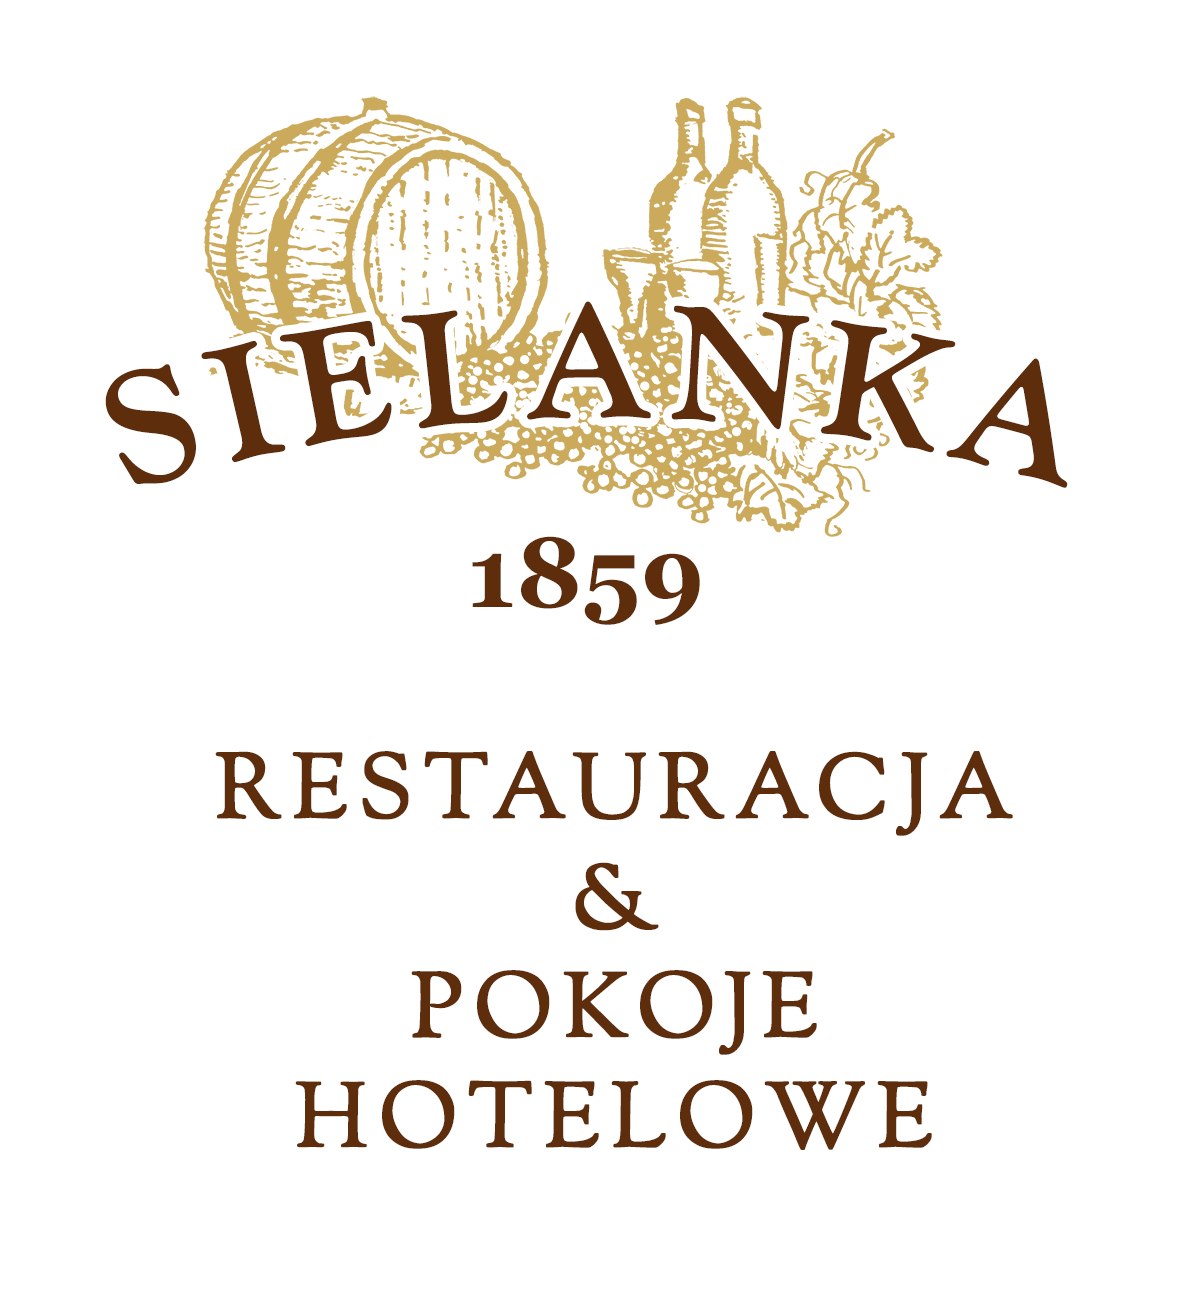 Sielanka Restauracja & Pokoje Hotelowe Logo